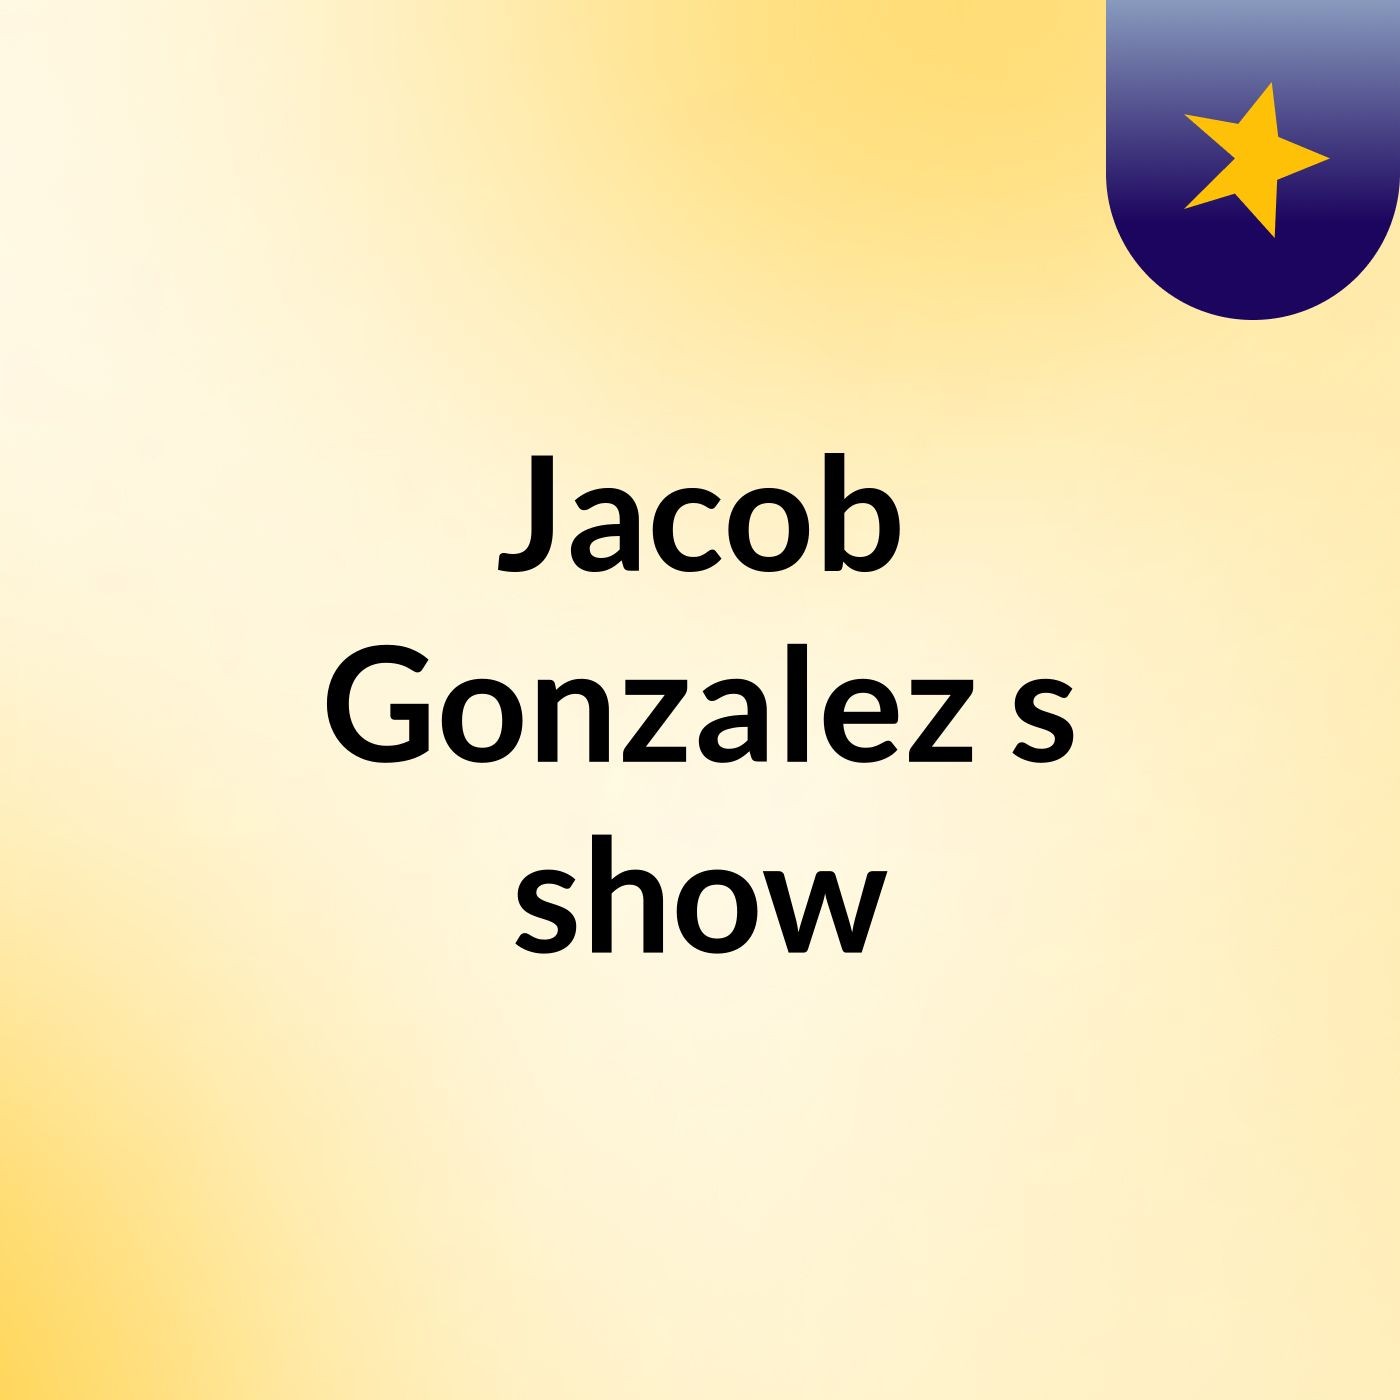 Jacob Gonzalez's show